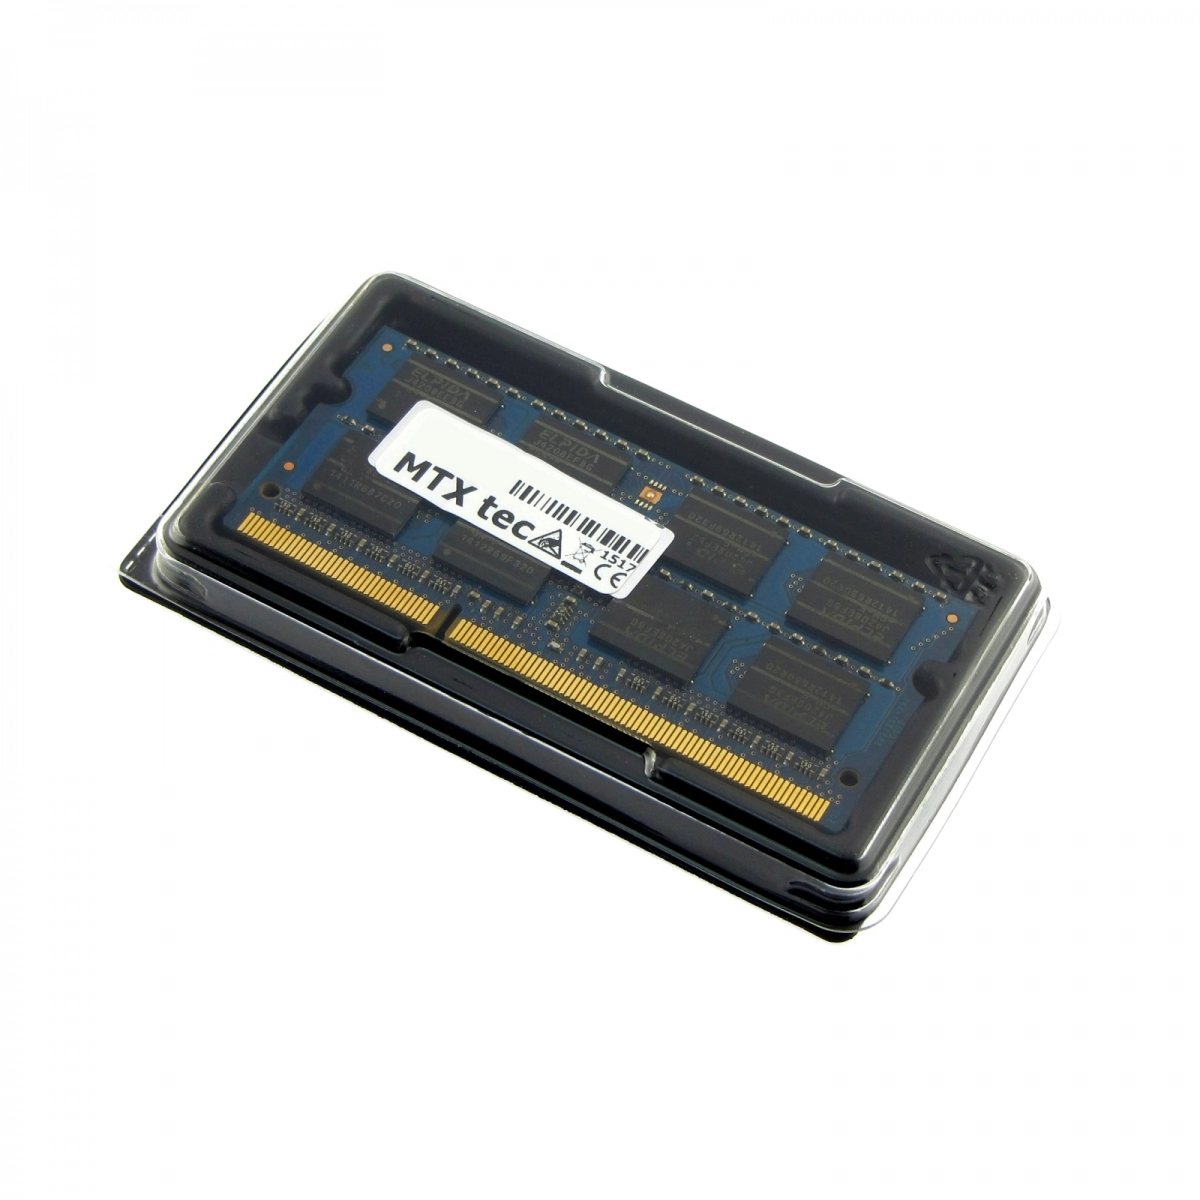 MTXtec Arbeitsspeicher 8 GB RAM für LENOVO G505s